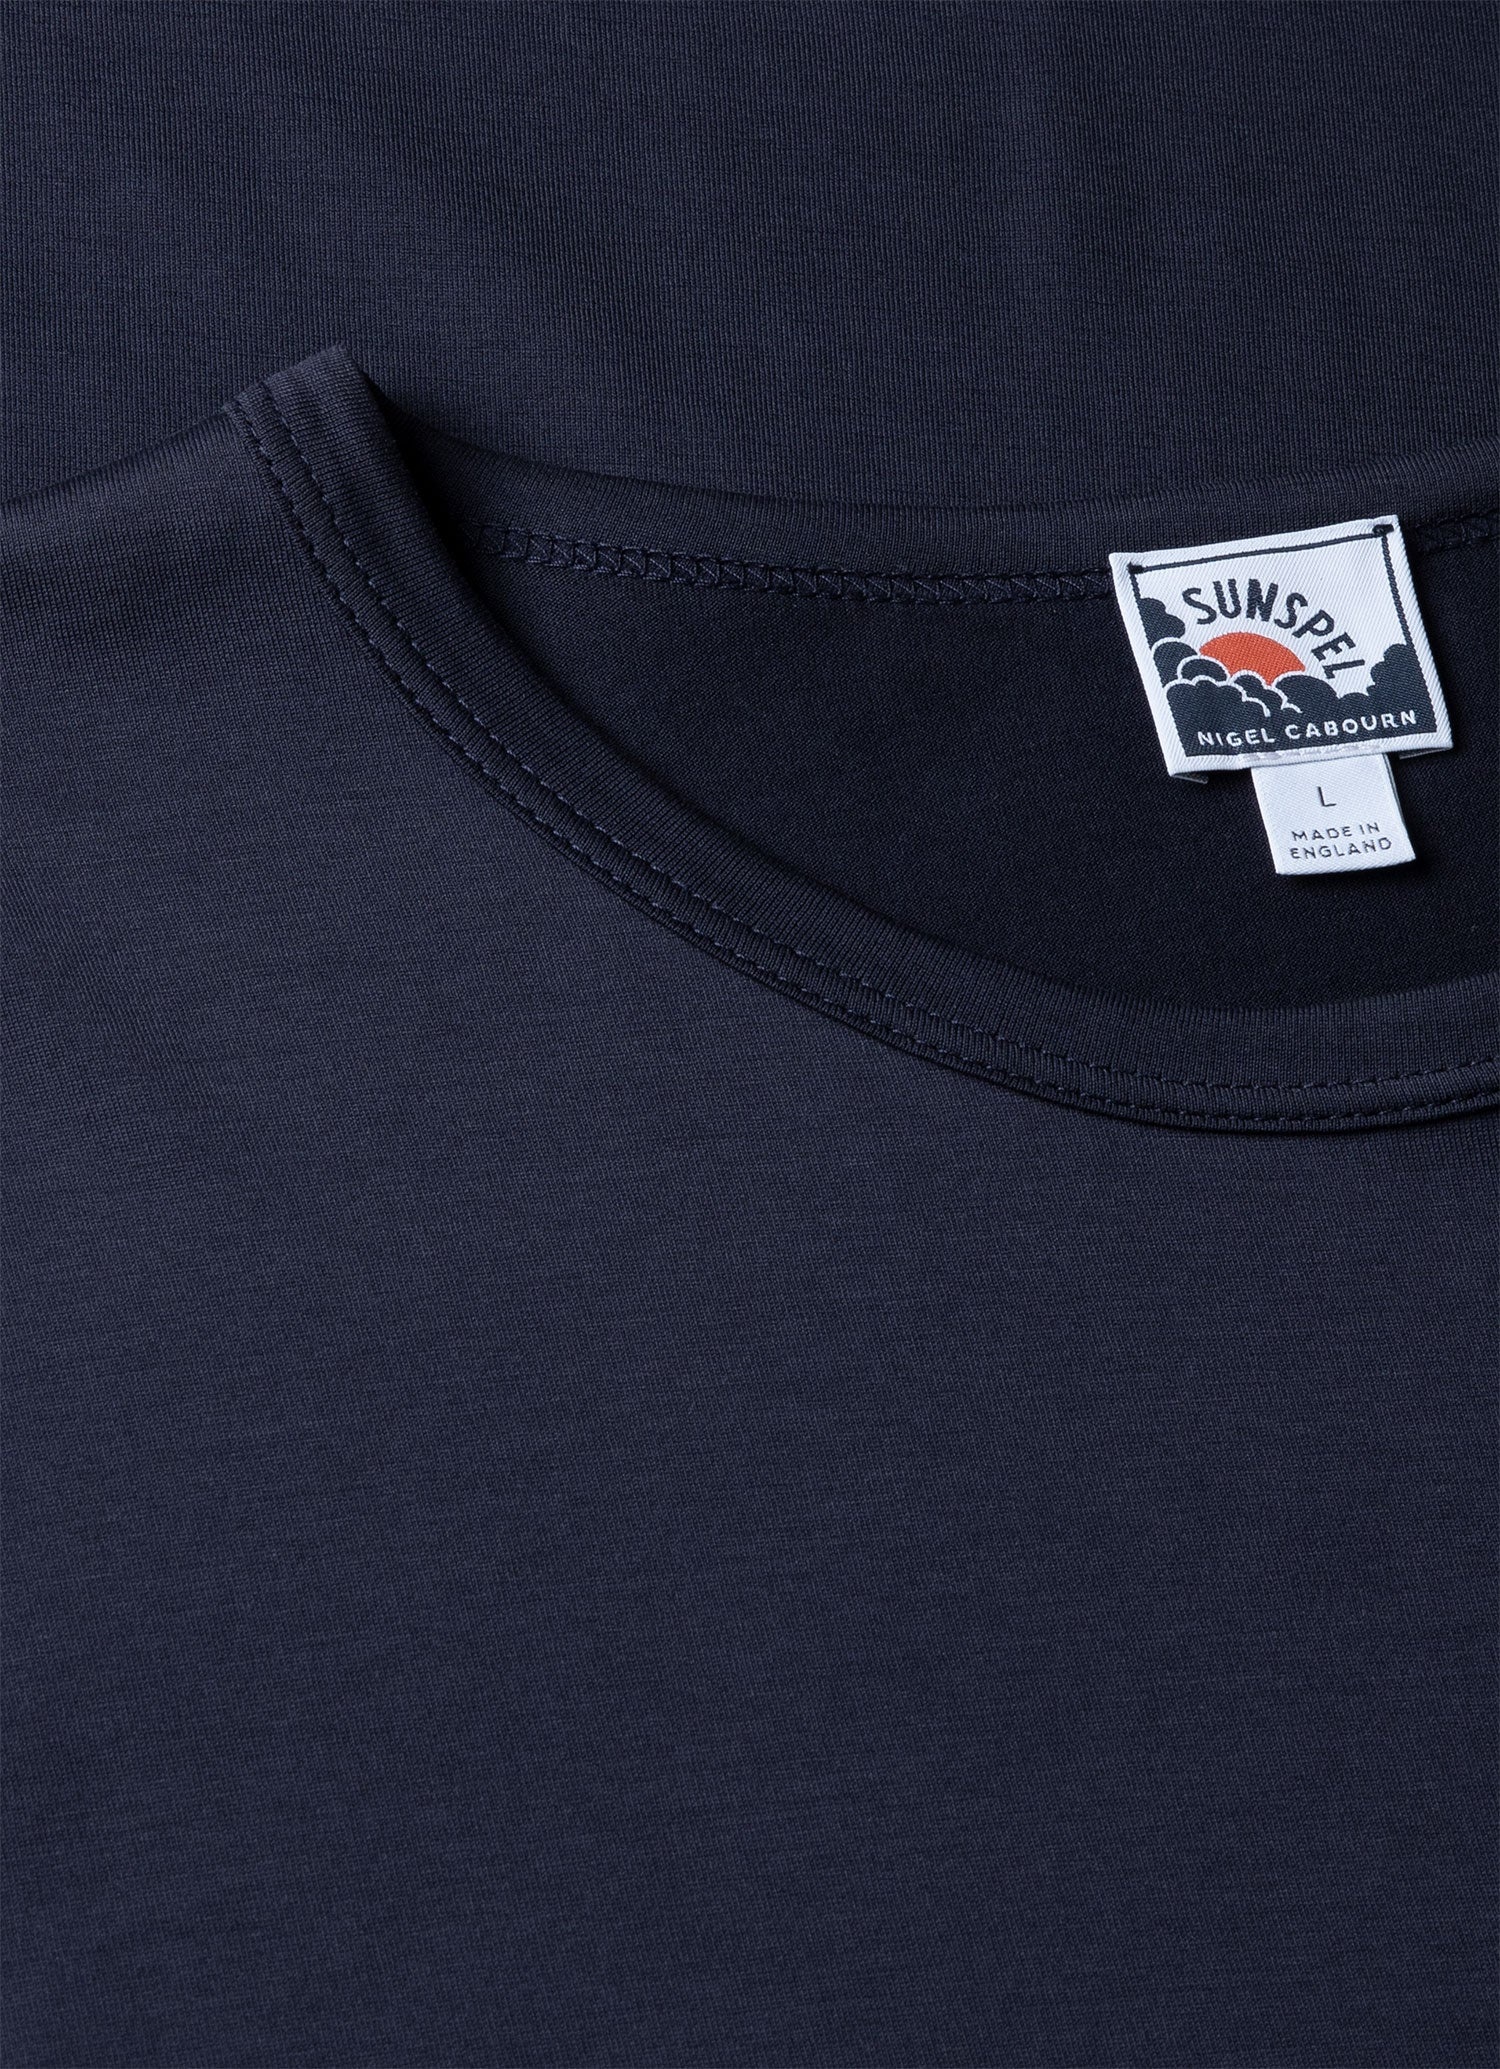 Sunspel x Nigel Cabourn T‑shirt - 4